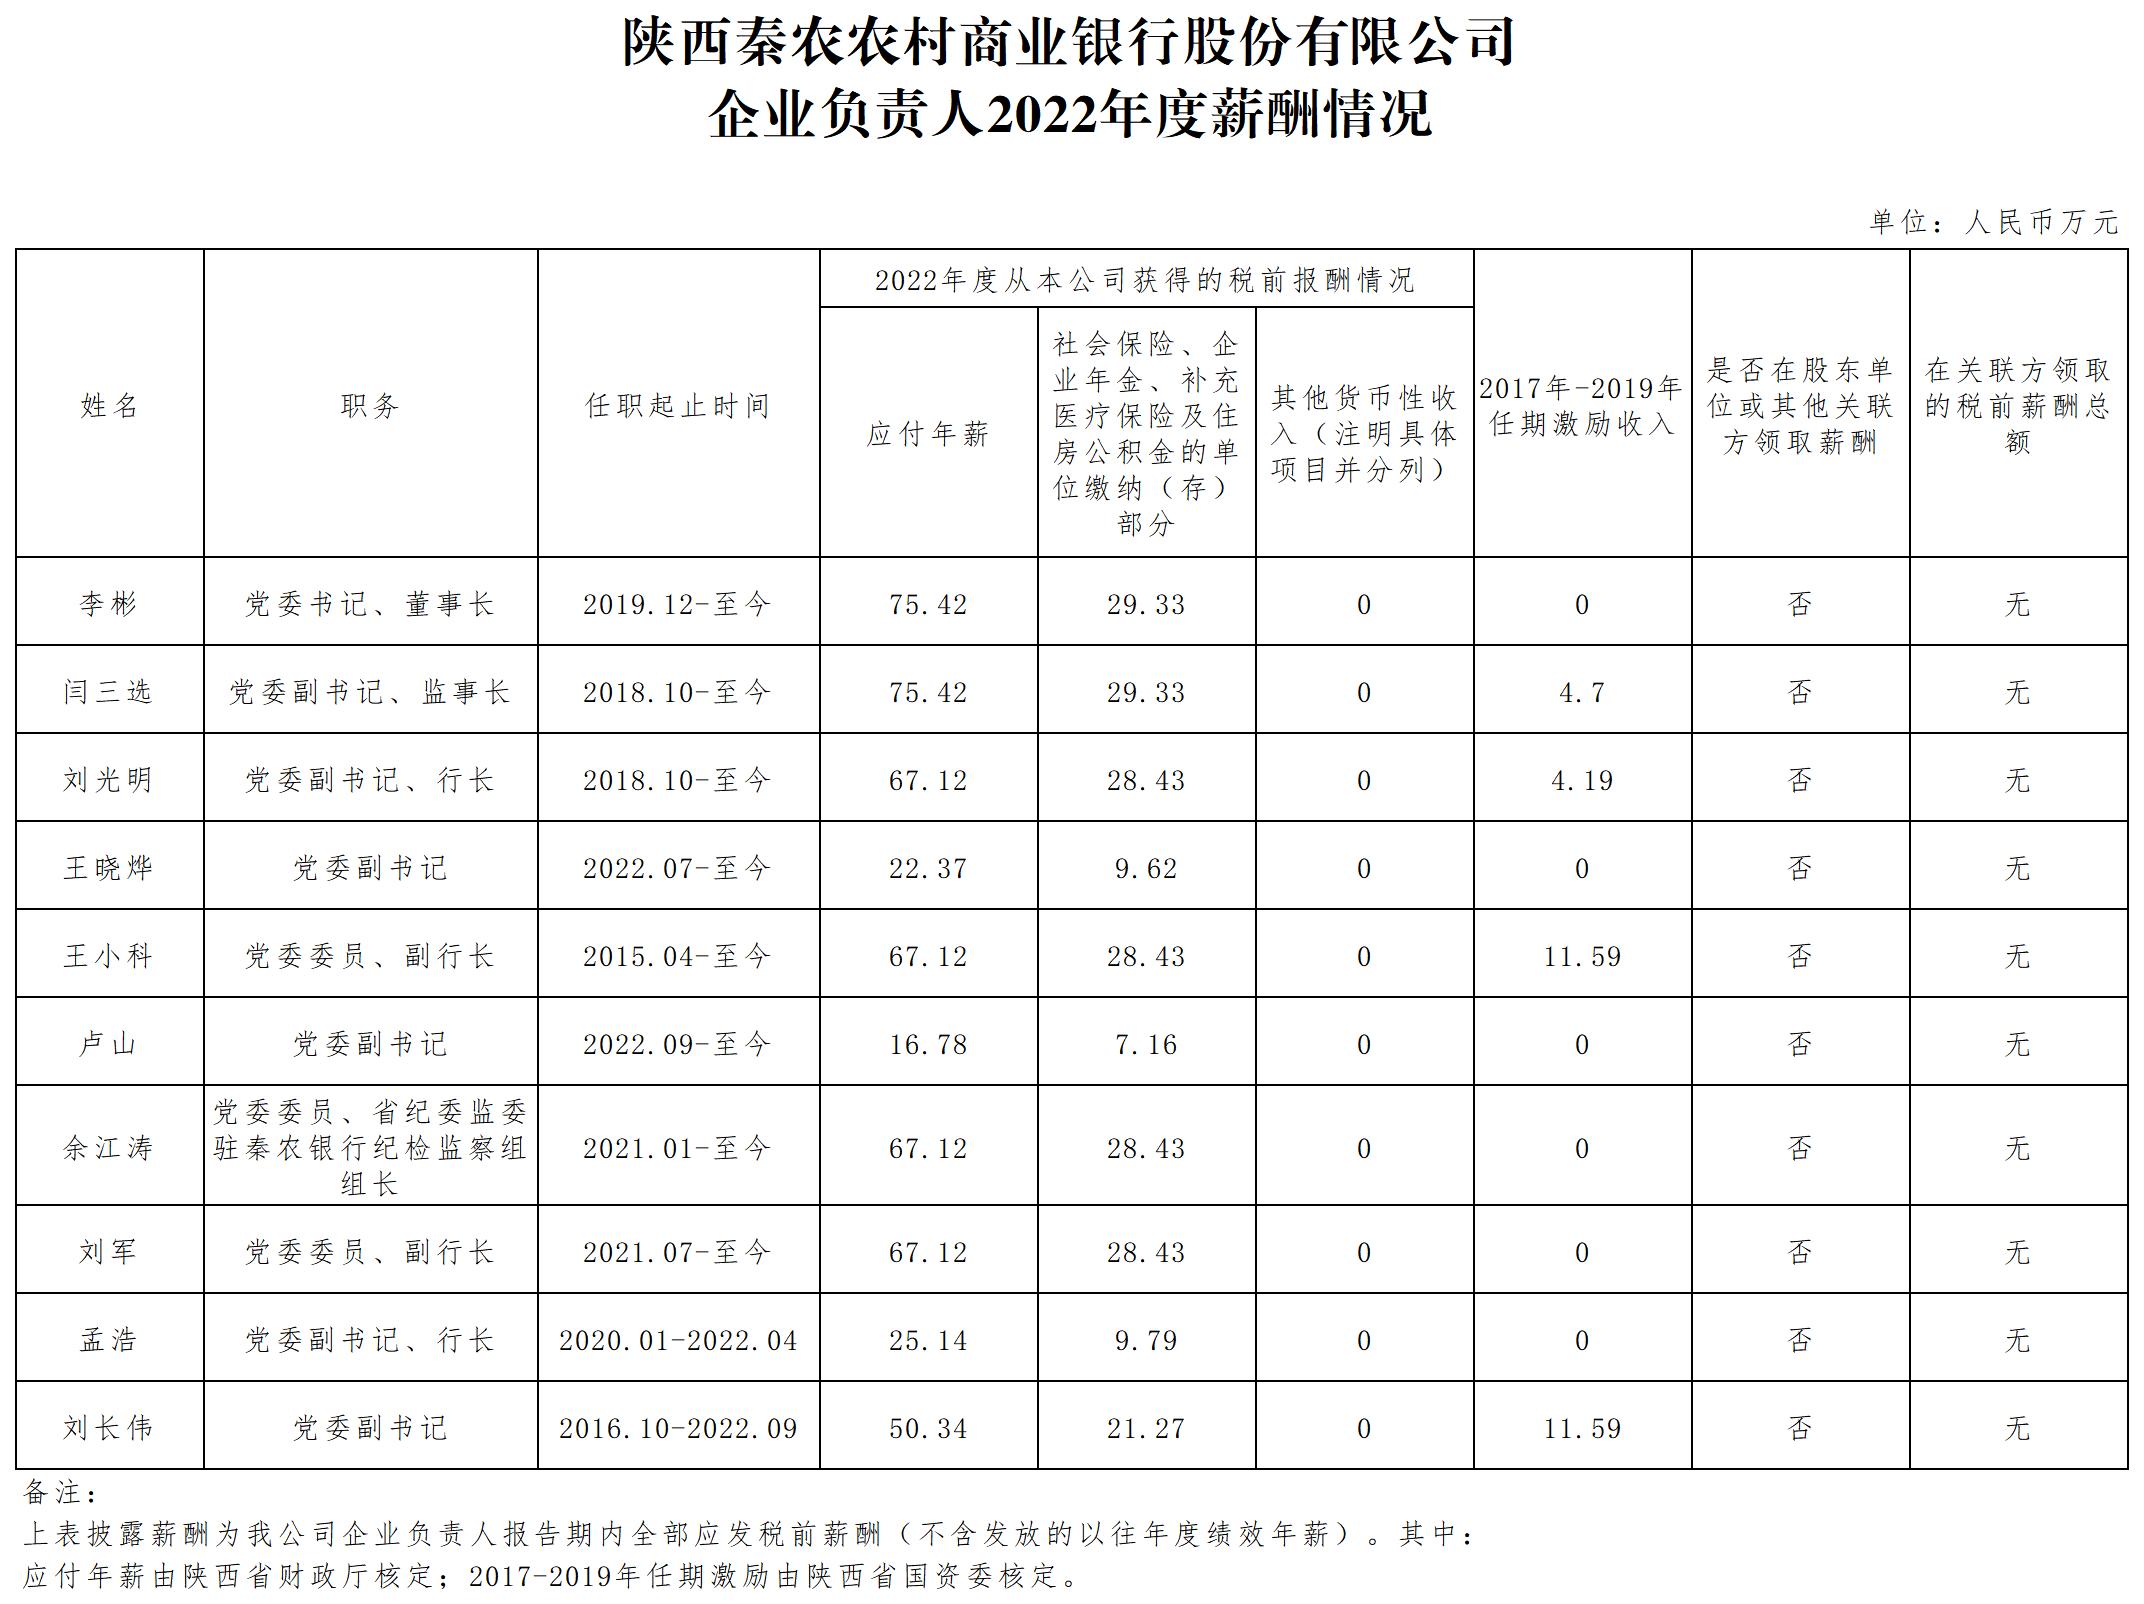 省屬企業負責人薪酬信息披露樣式12.15_Sheet1(2).jpg